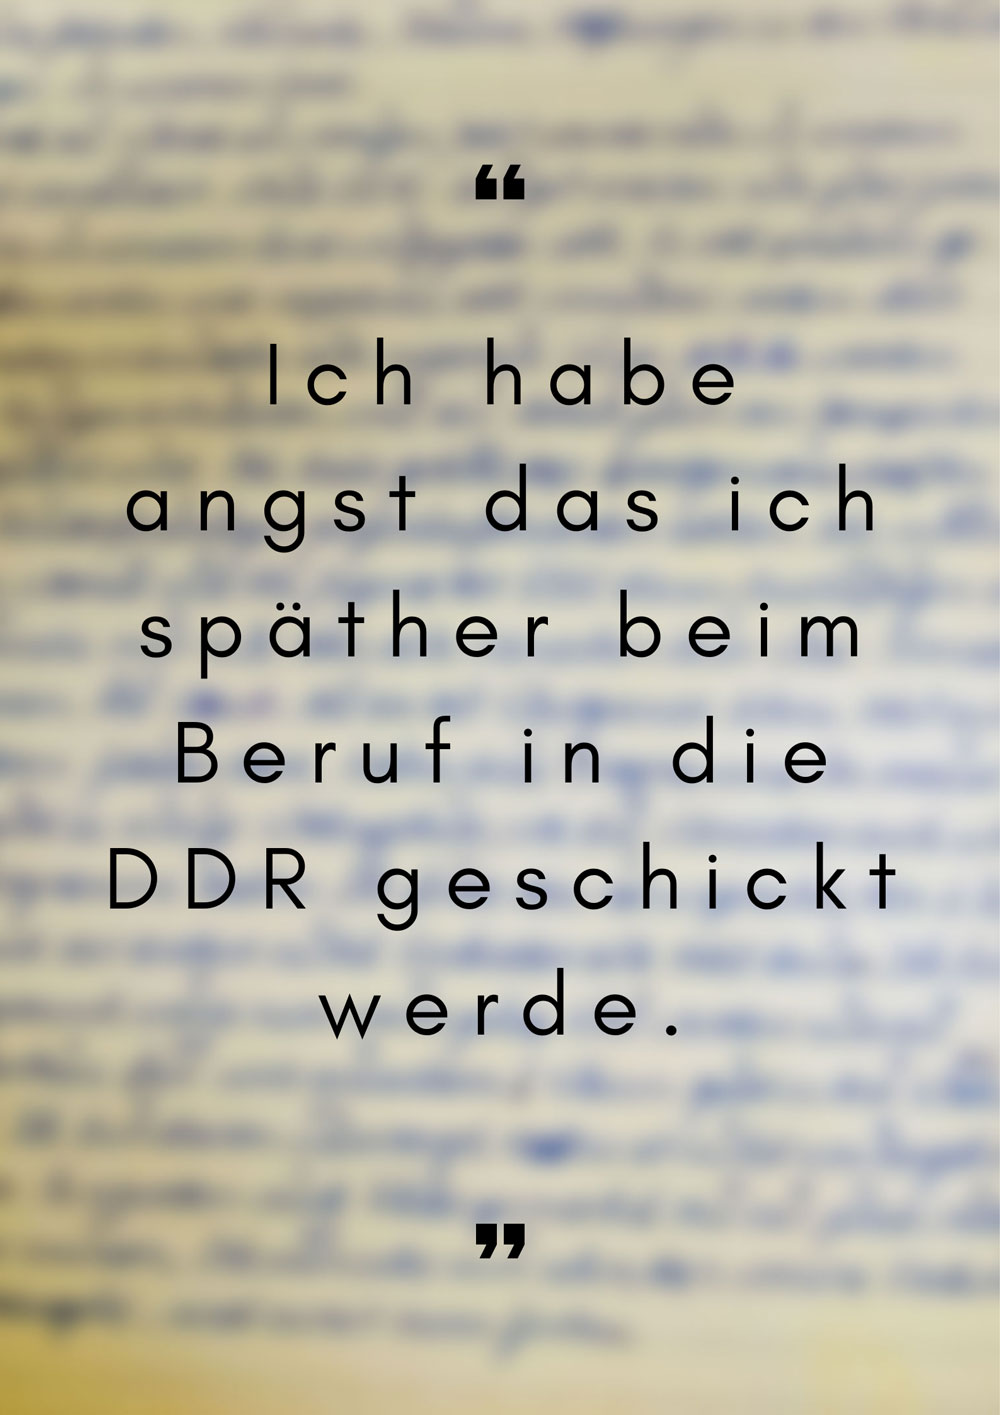 Ein handgeschriebener Brief zum Thema Deutsche Einheit. Zitat: Ich habe angst das ich späther beim Beruf in die DDR geschickt werden.